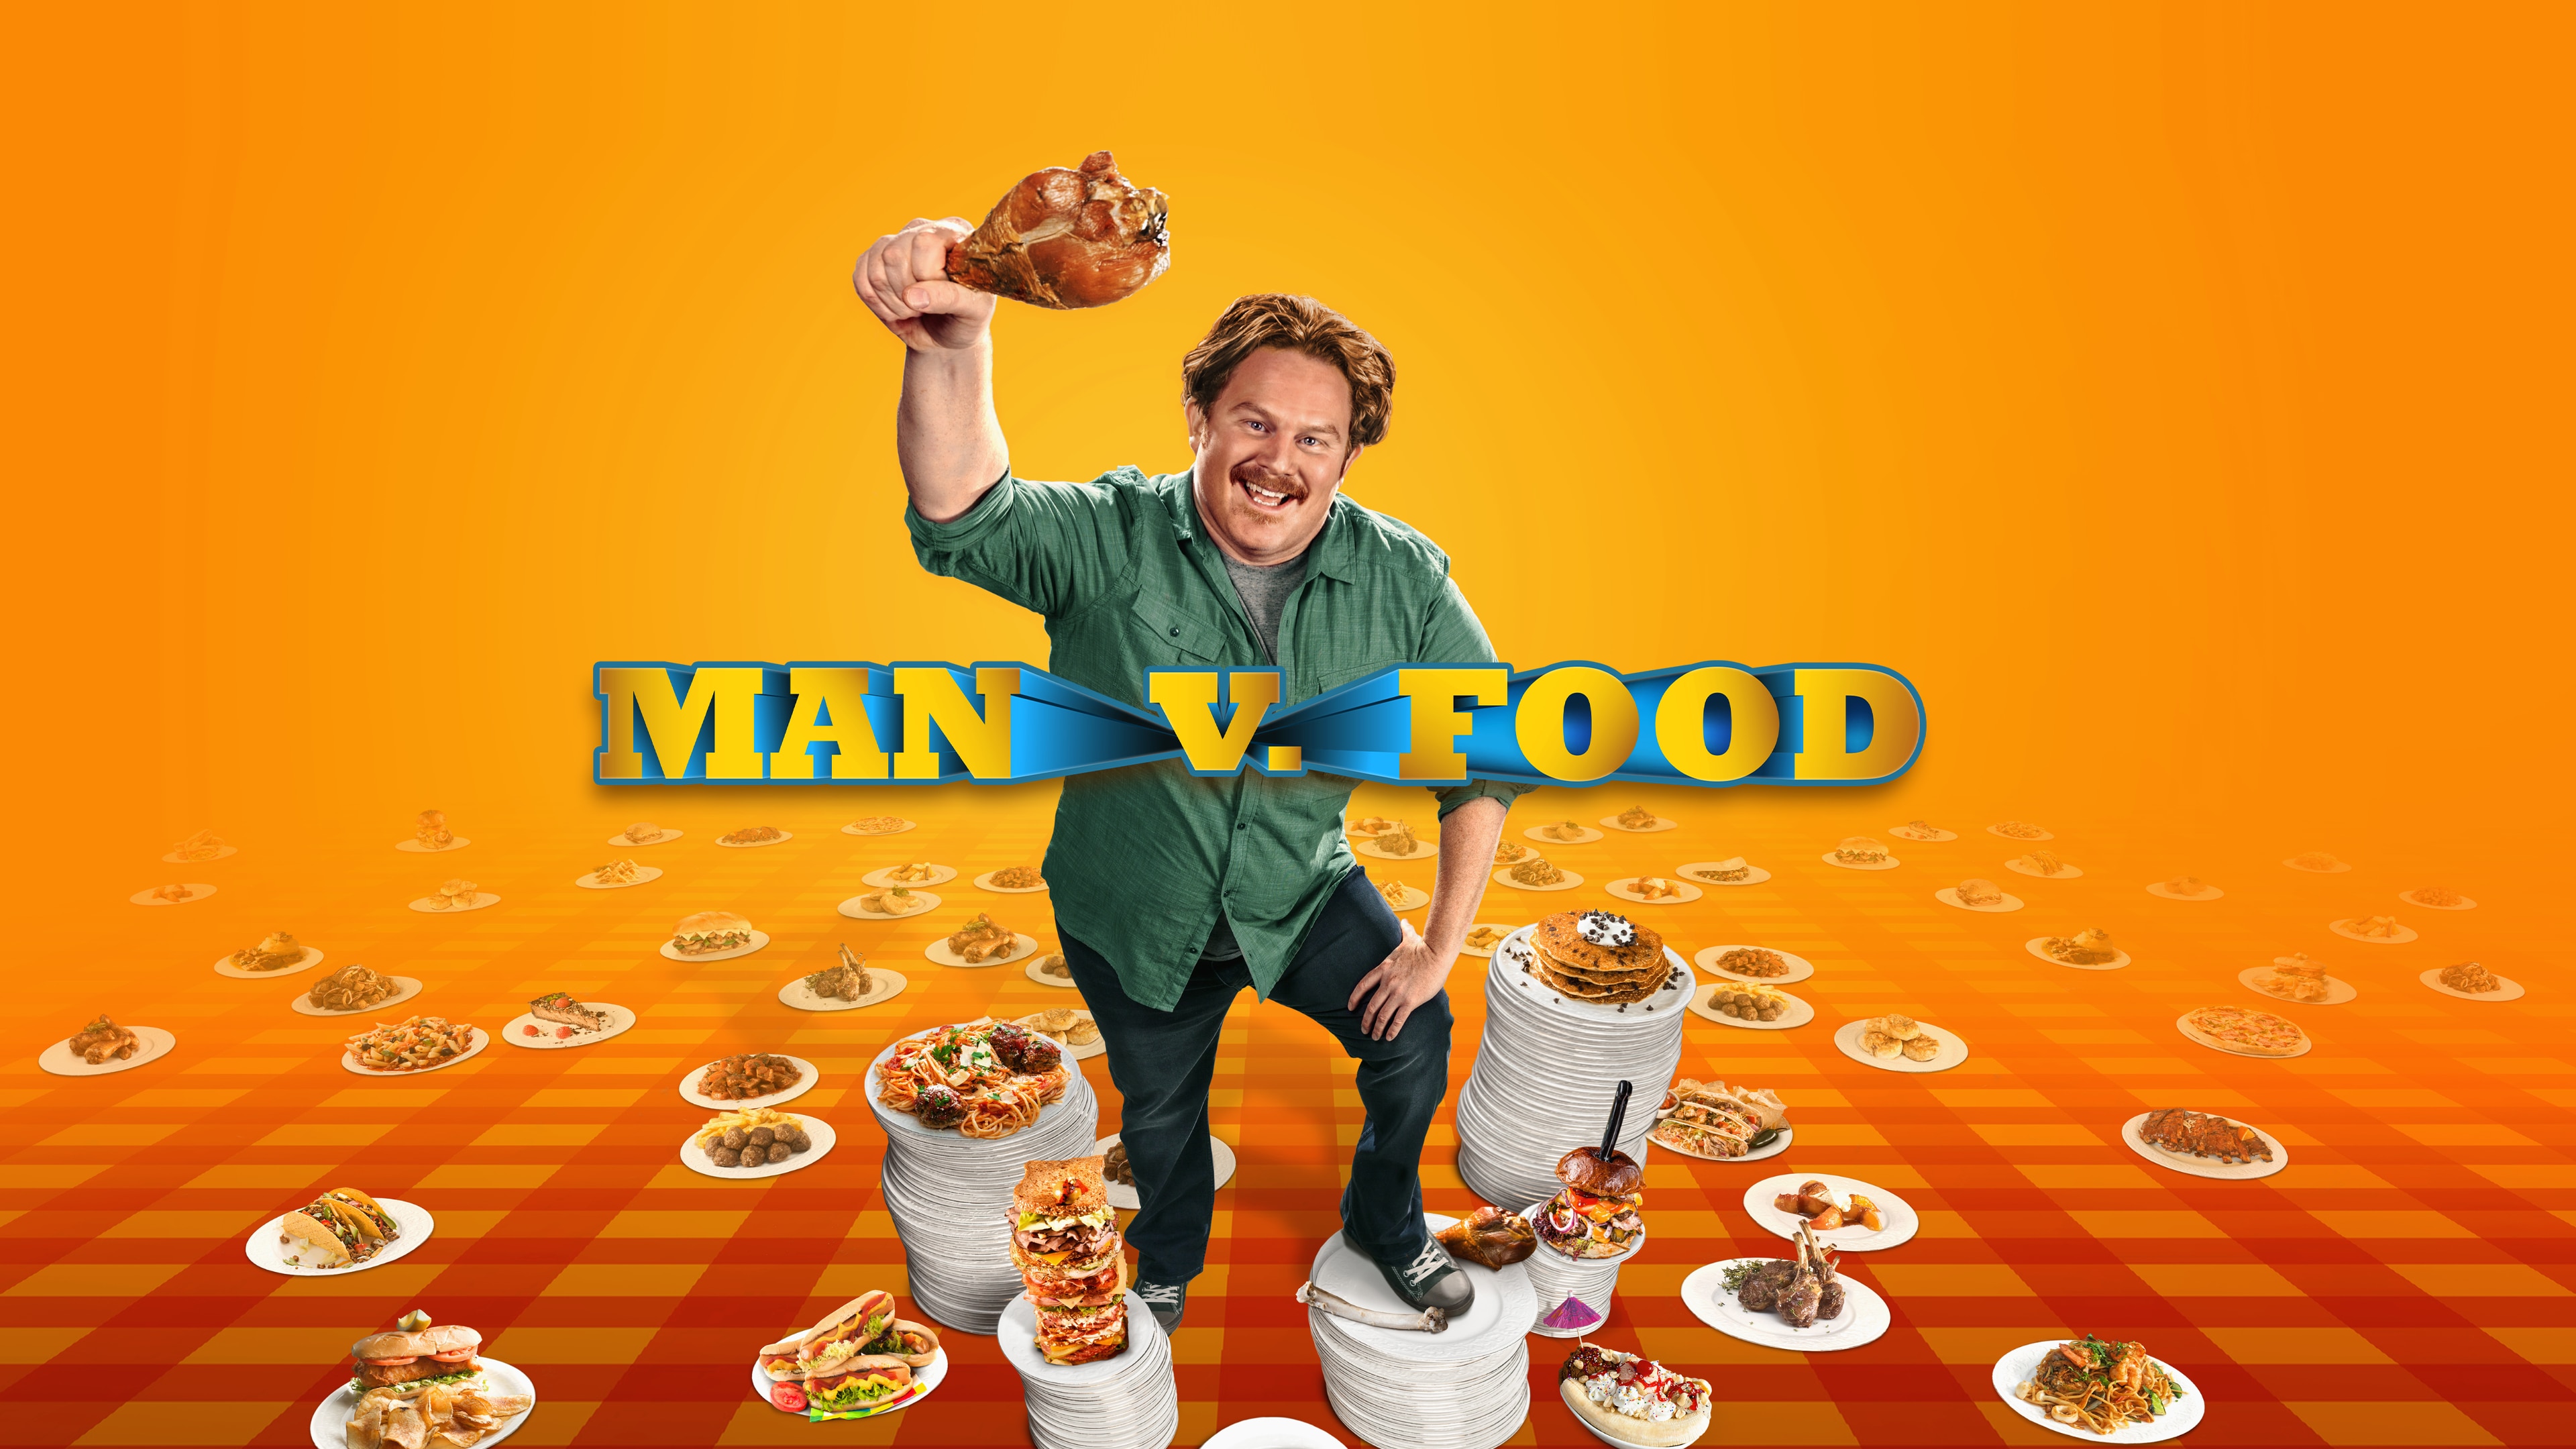 Watch Man v. Food